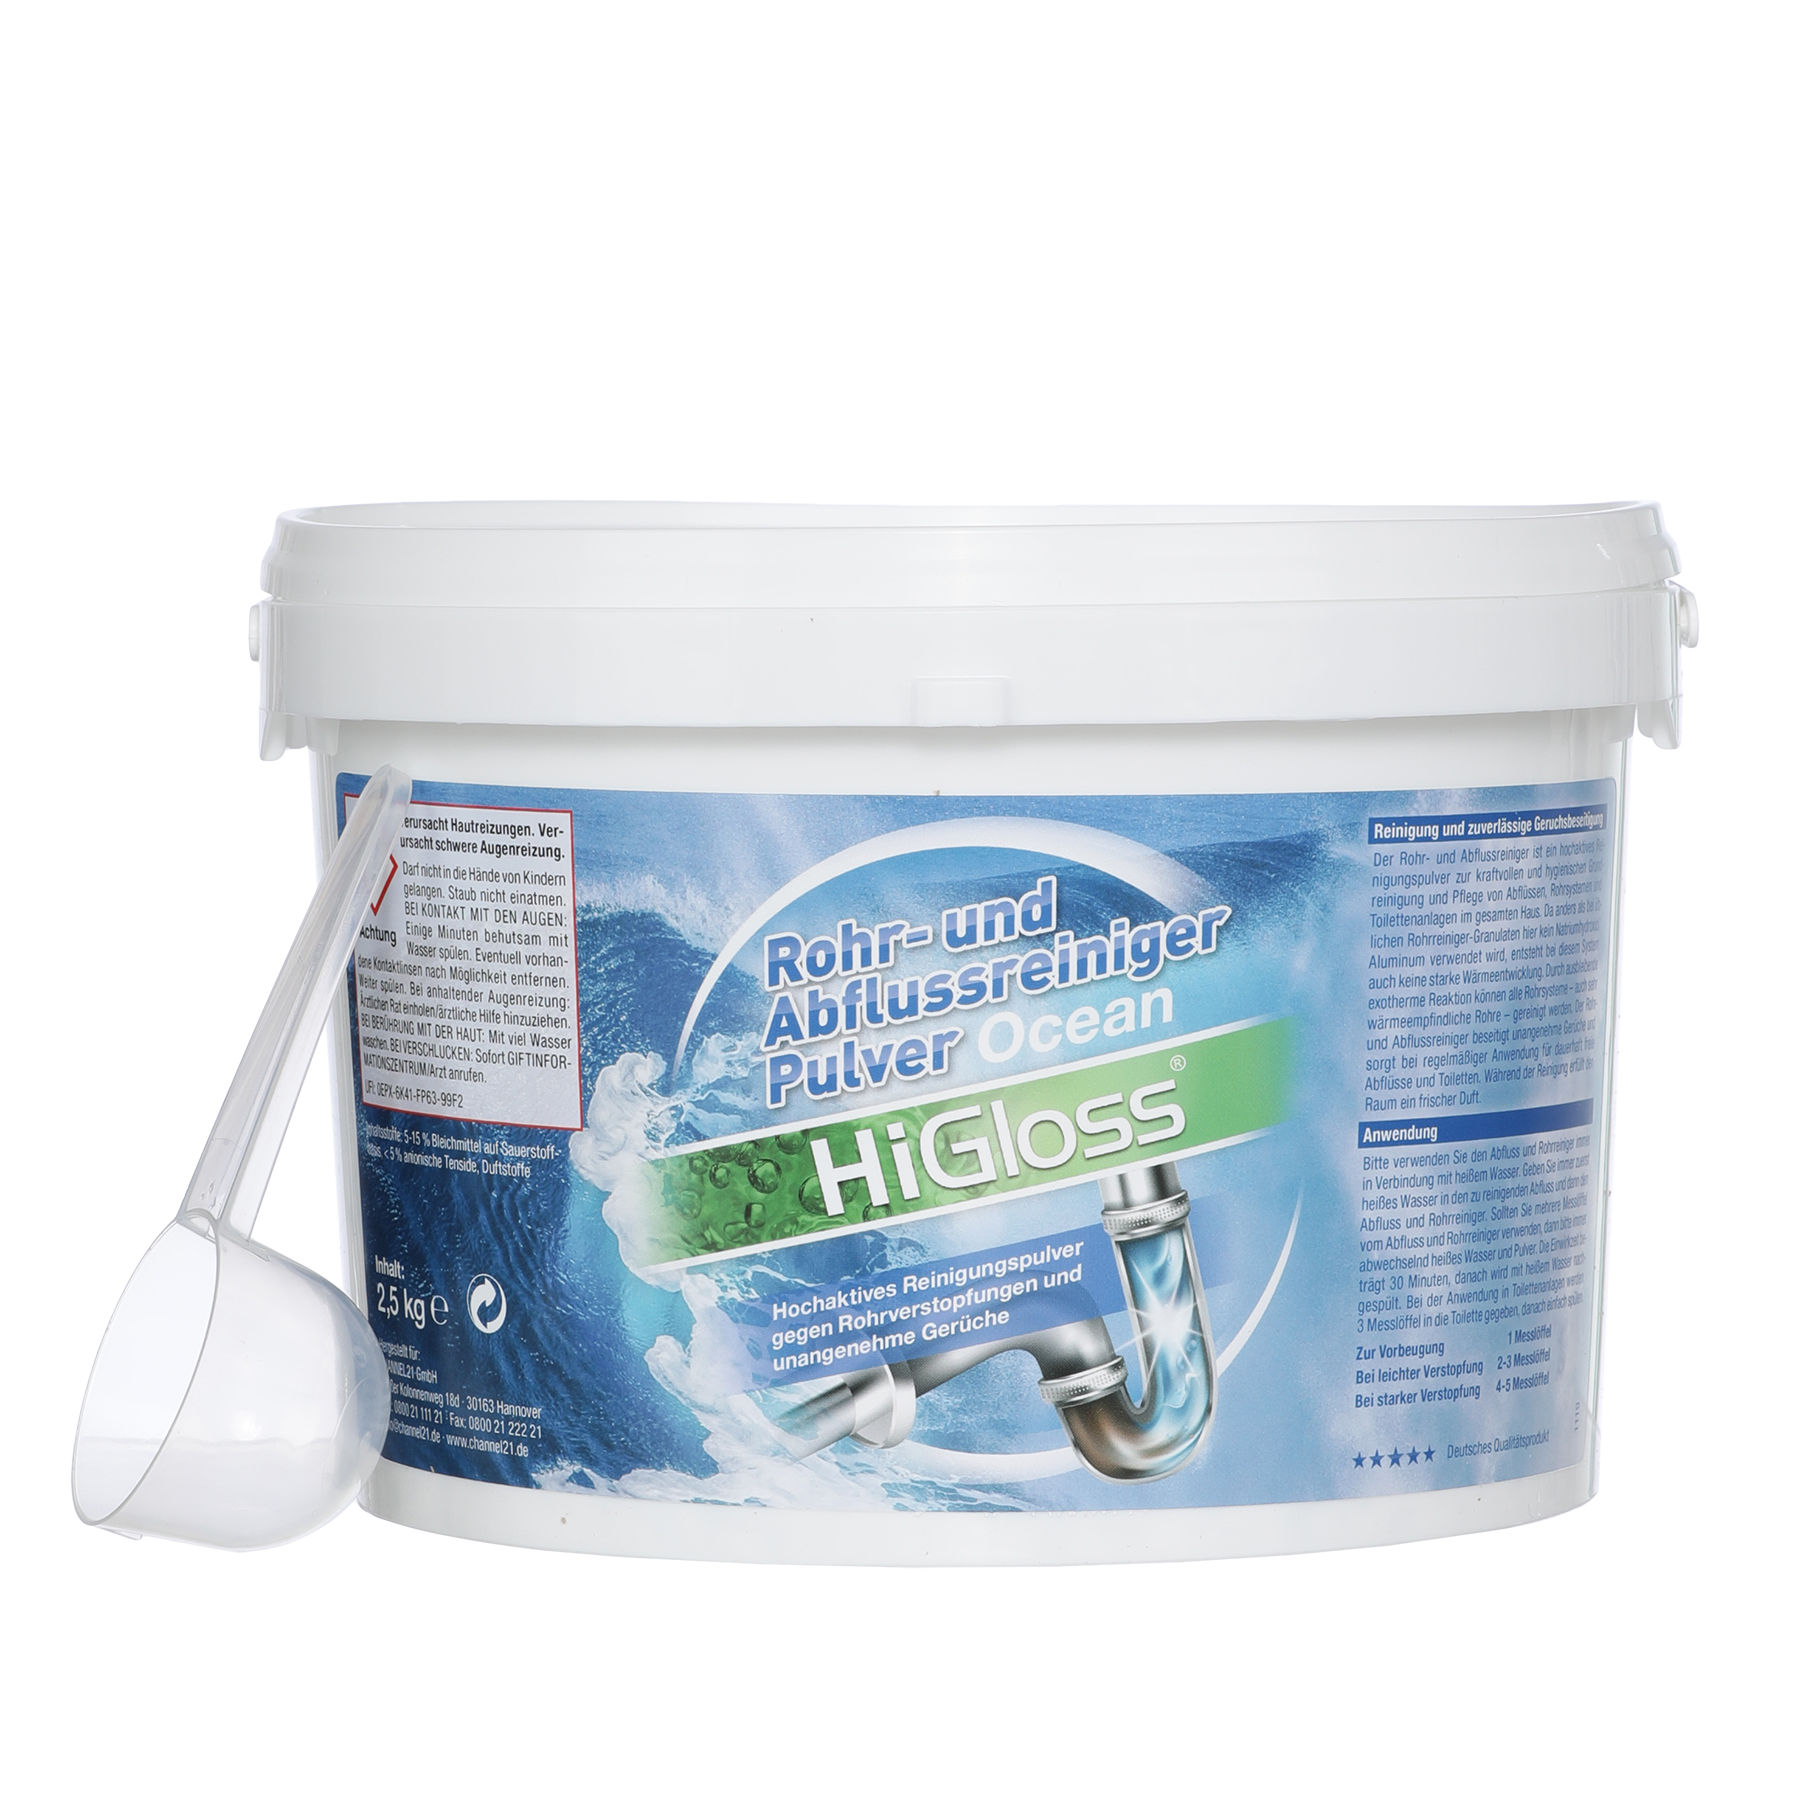 Rohr- und Abflussreiniger Pulver, 2,5 kg - Produkte - HiGloss - Marken